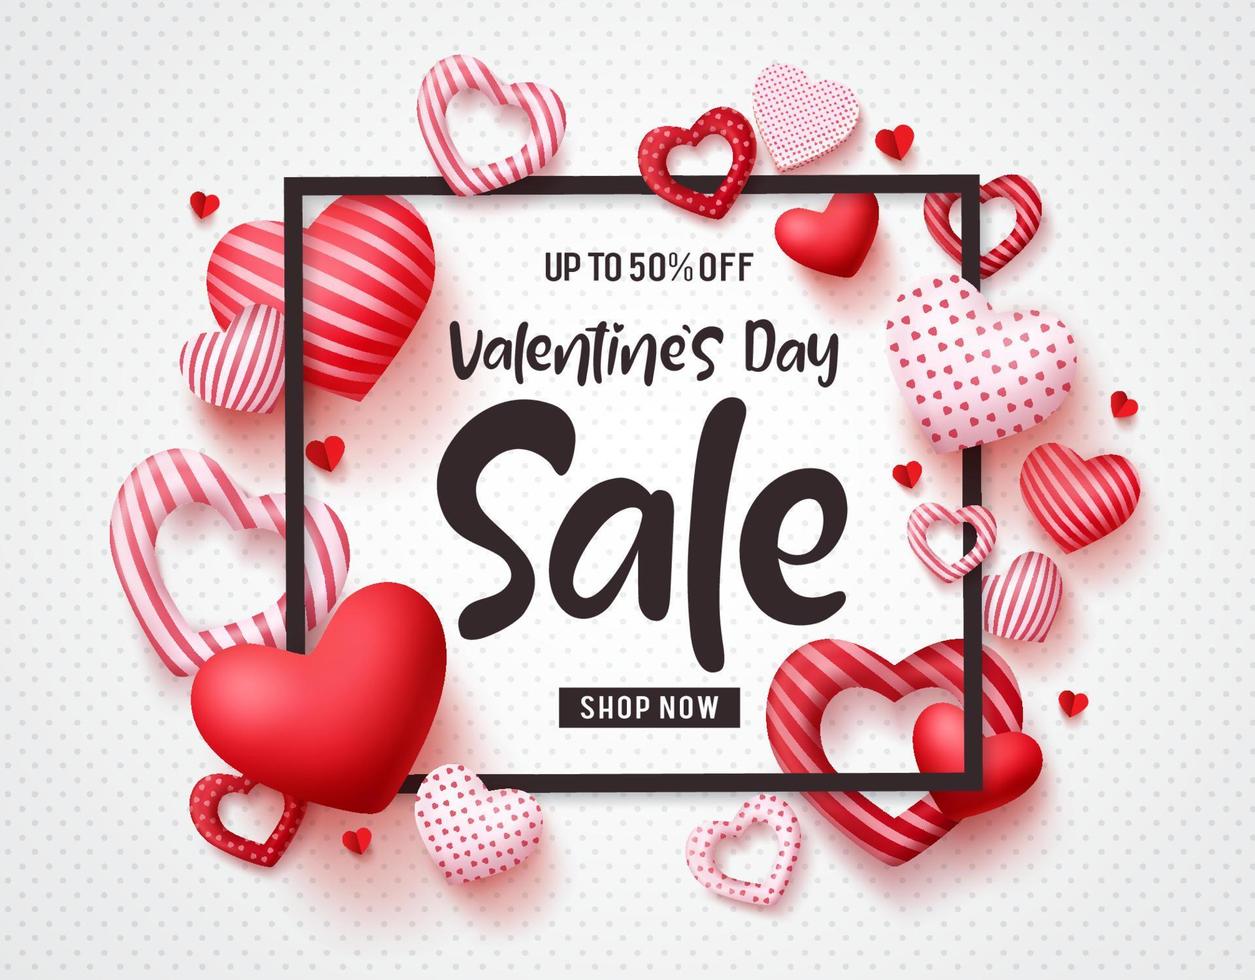 Valentijnsdag verkoop vector sjabloon voor spandoek met verkoop promotie tekst, harten elementen en een frame op witte patroon achtergrond. vectorillustratie.